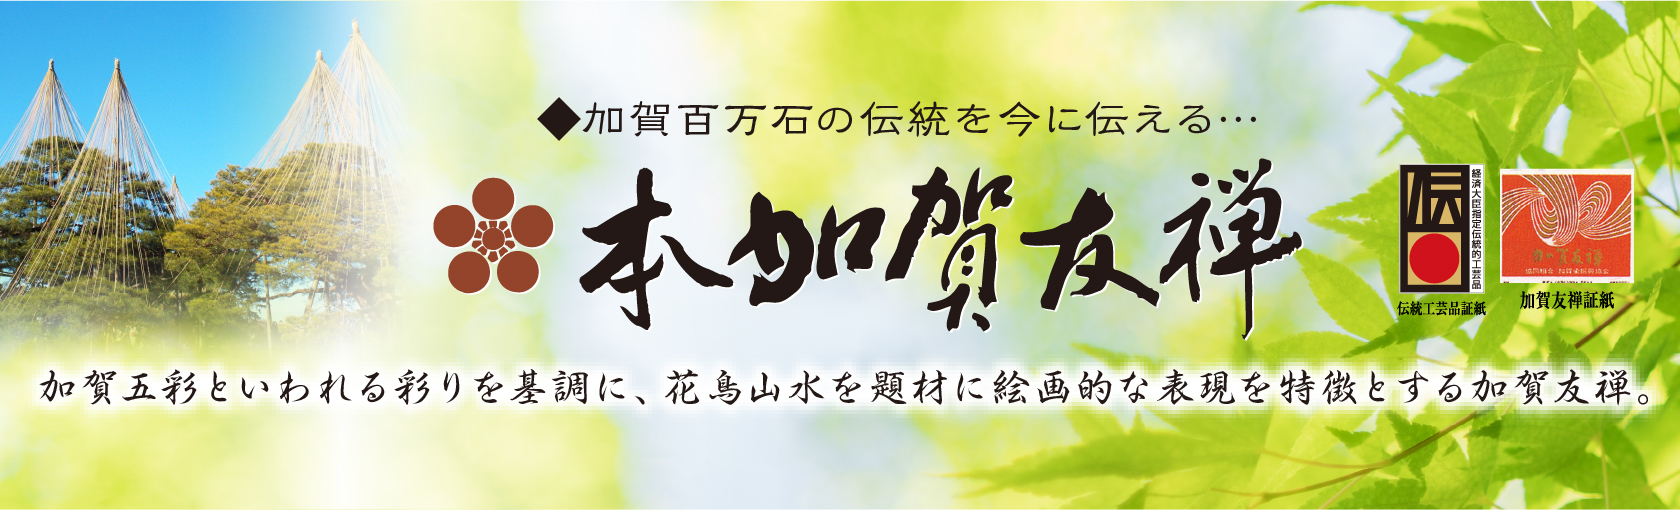 本加賀友禅　加賀五彩といわれる彩りを基調に、花鳥山水を題材に絵画的な表現を特徴とする加賀友禅。